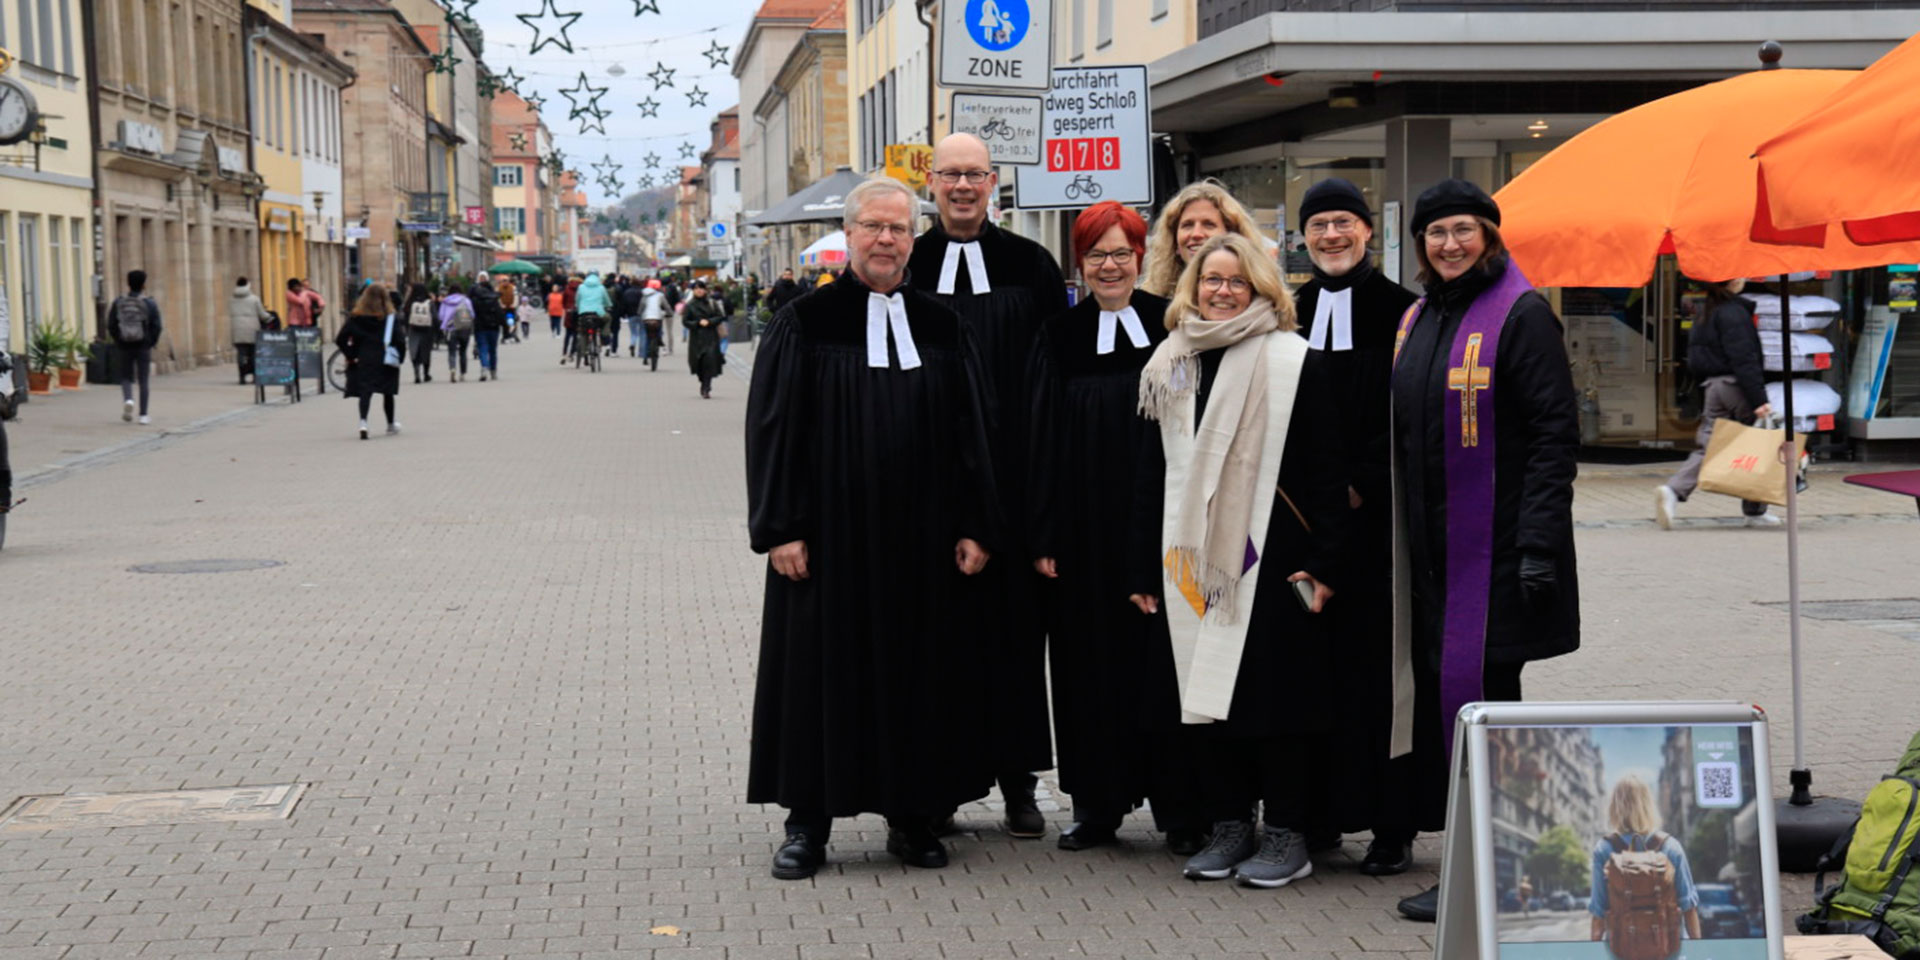 7 evangelischen Pfarrerinnen und Pfarrer aus Erlangen standen, weithin erkennbar im schwarzen Talar, zum Gespräch bereit. 